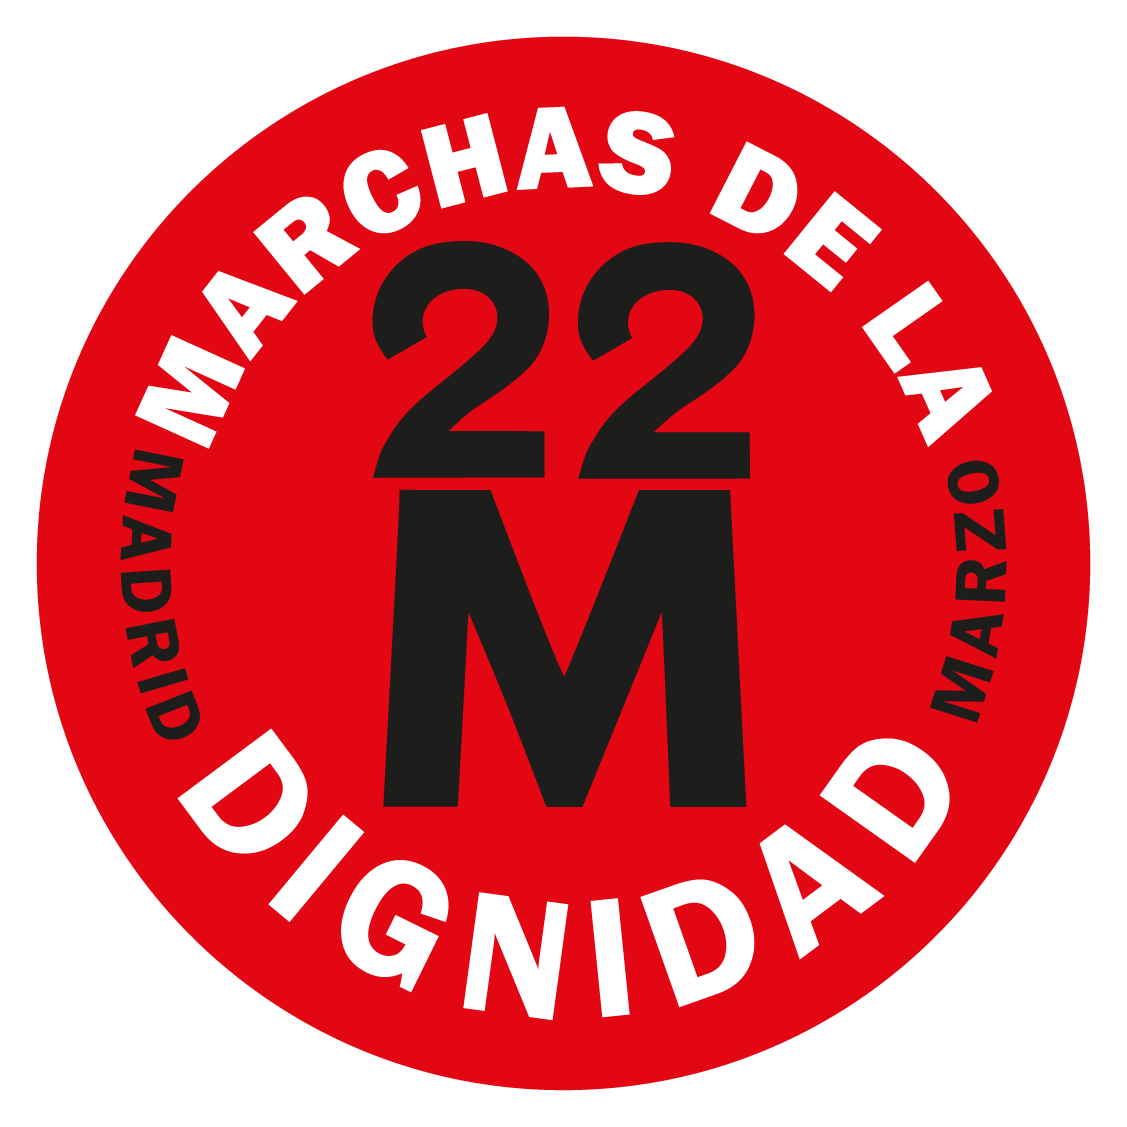 Marchas_de_la_Dignidad_22M